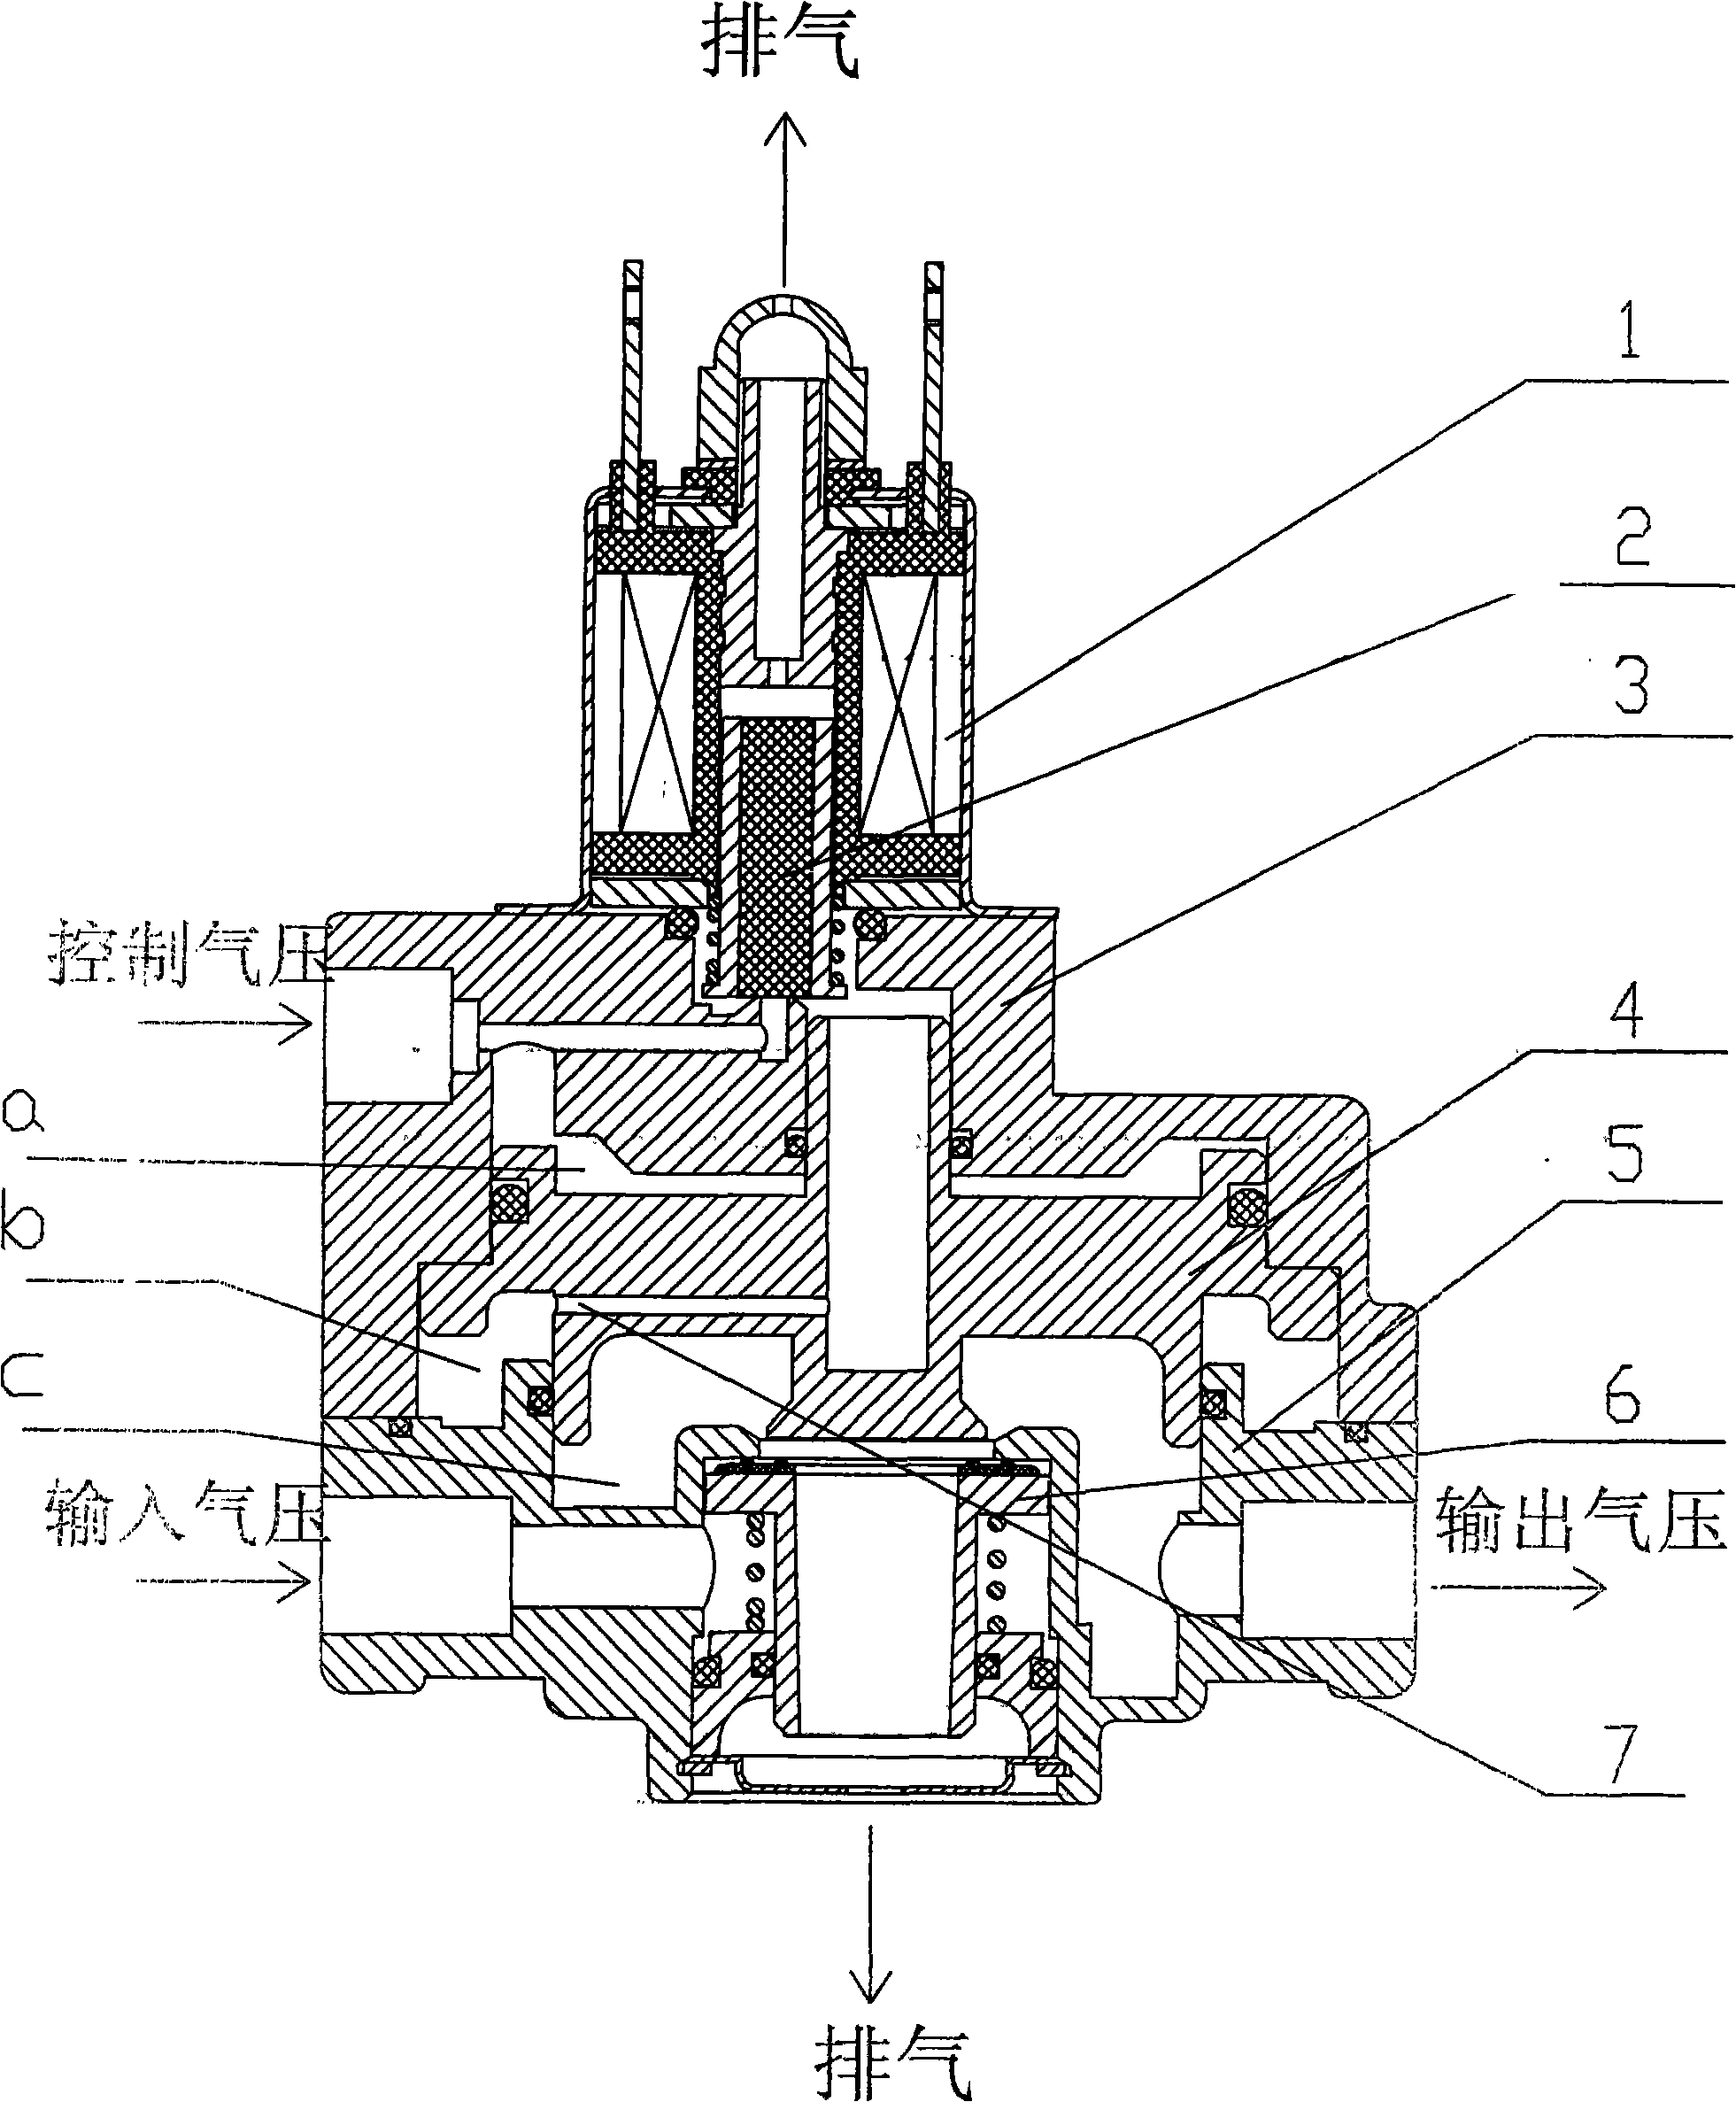 Relay valve